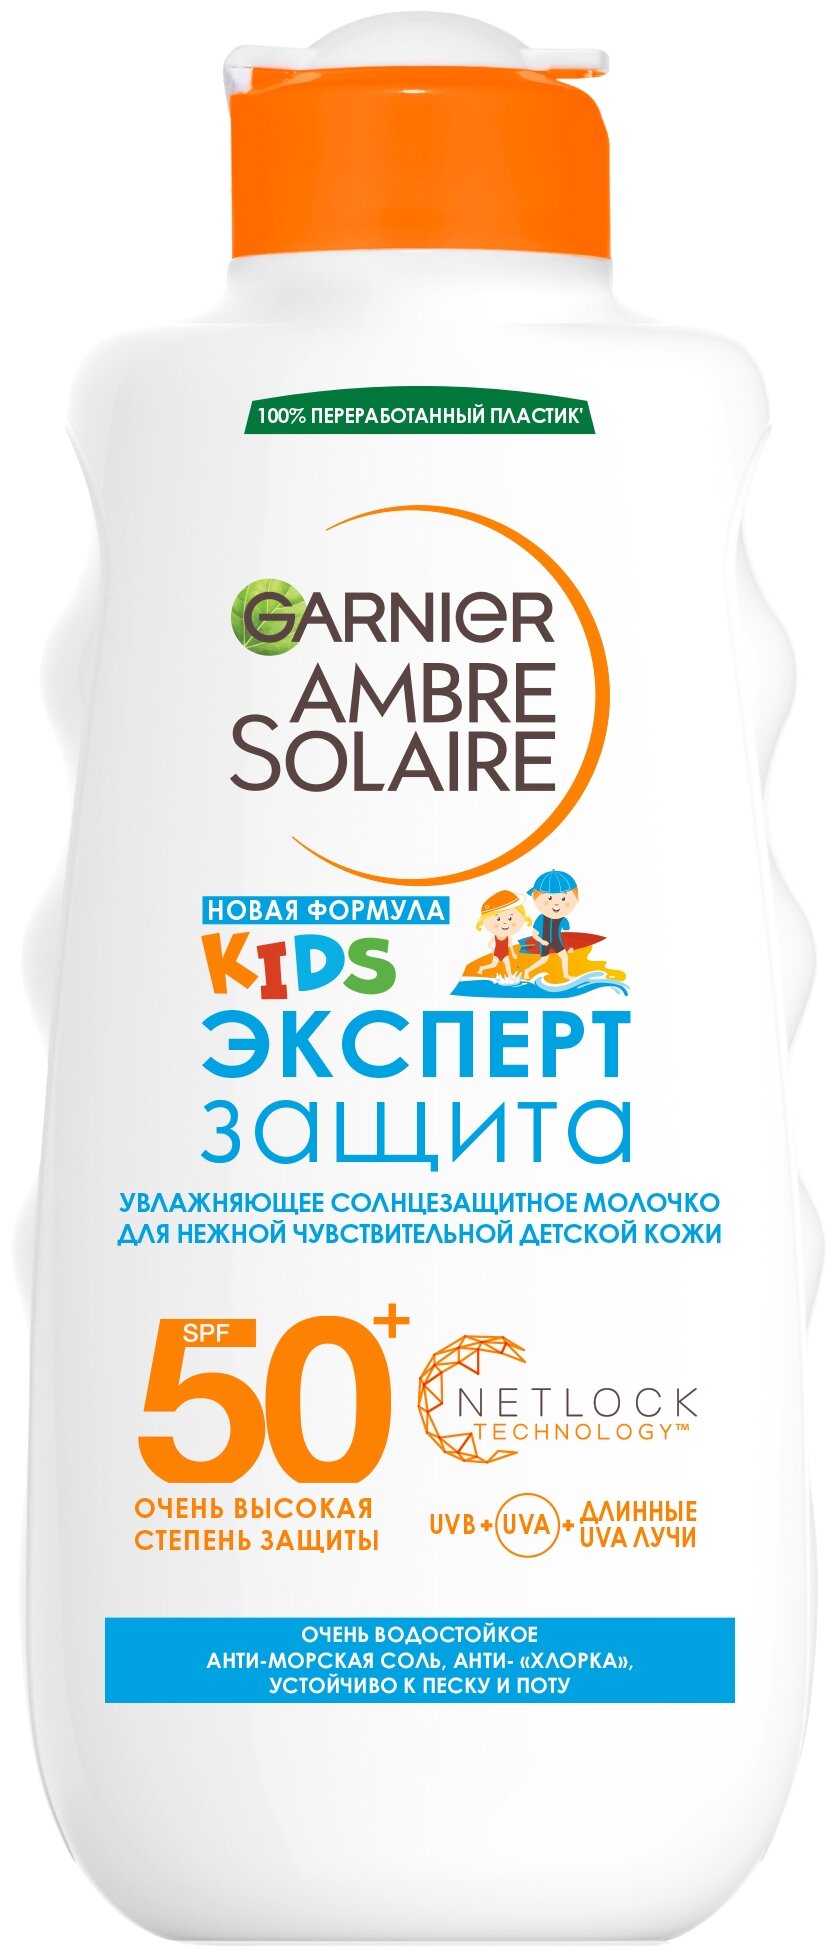 GARNIER Ambre Solaire детское увлажняющее солнцезащитное молочко для чувствительной кожи Эксперт Защита SPF 50+